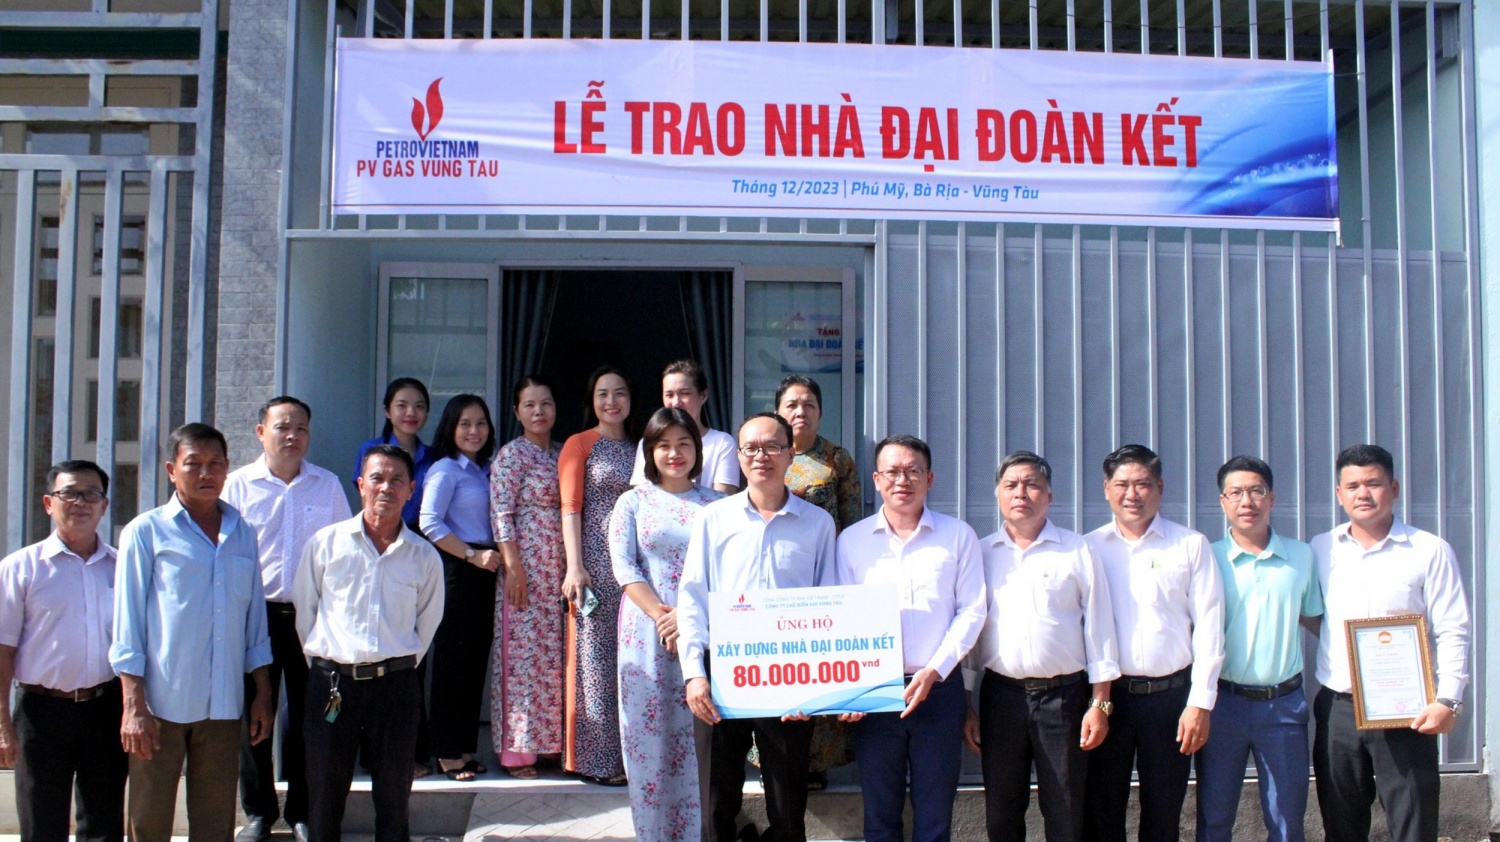 KVT trao tặng căn nhà đại đoàn kết tại thị xã Phú Mỹ, tỉnh Bà Rịa – Vũng Tàu